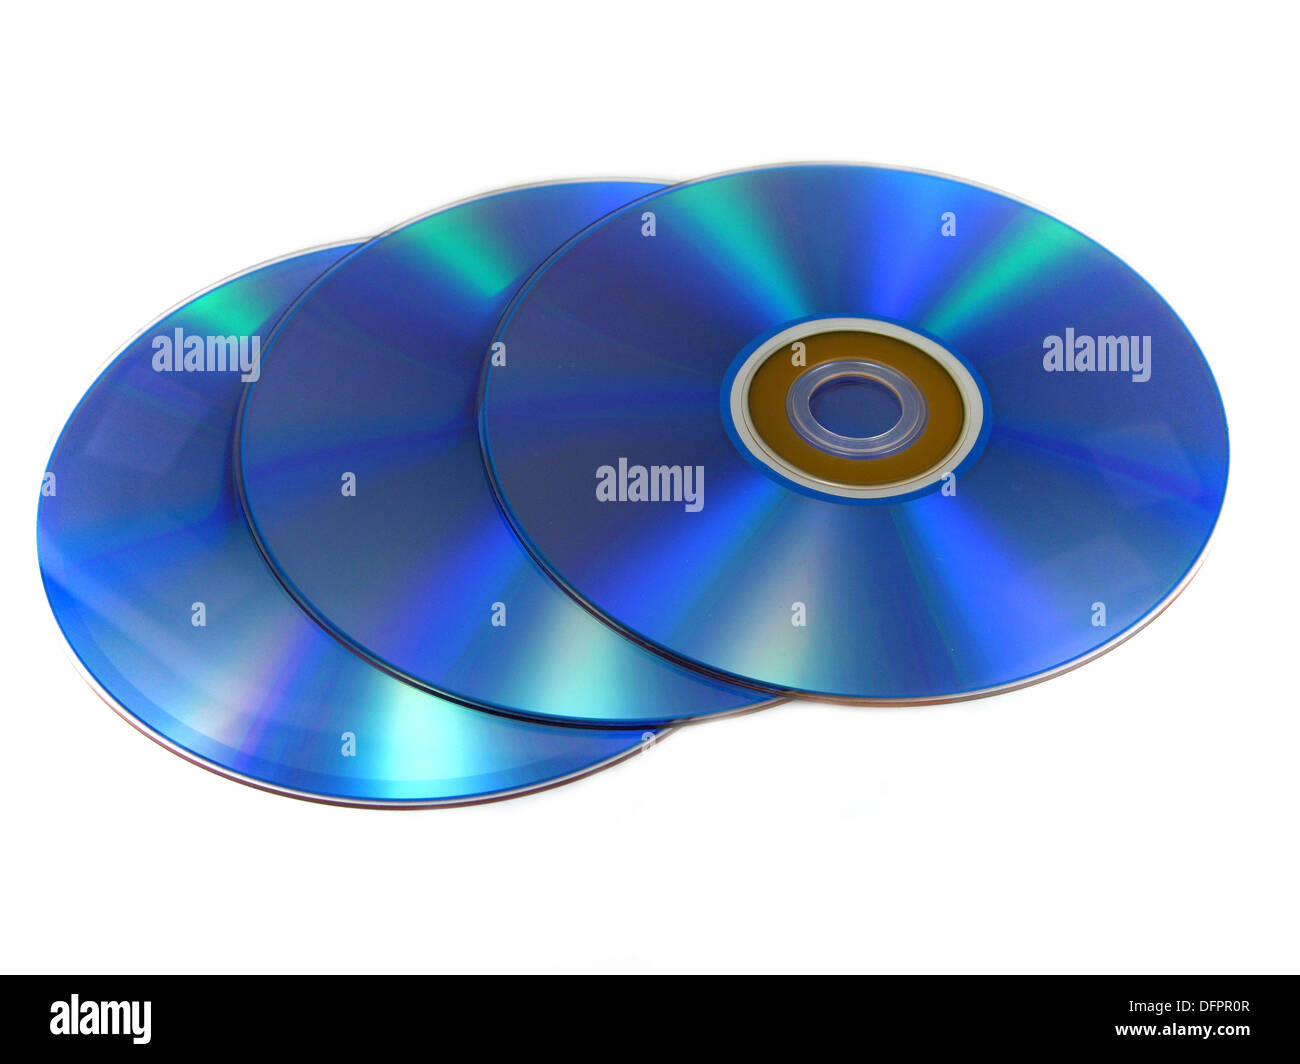 DVD or CD discs Stock Photo